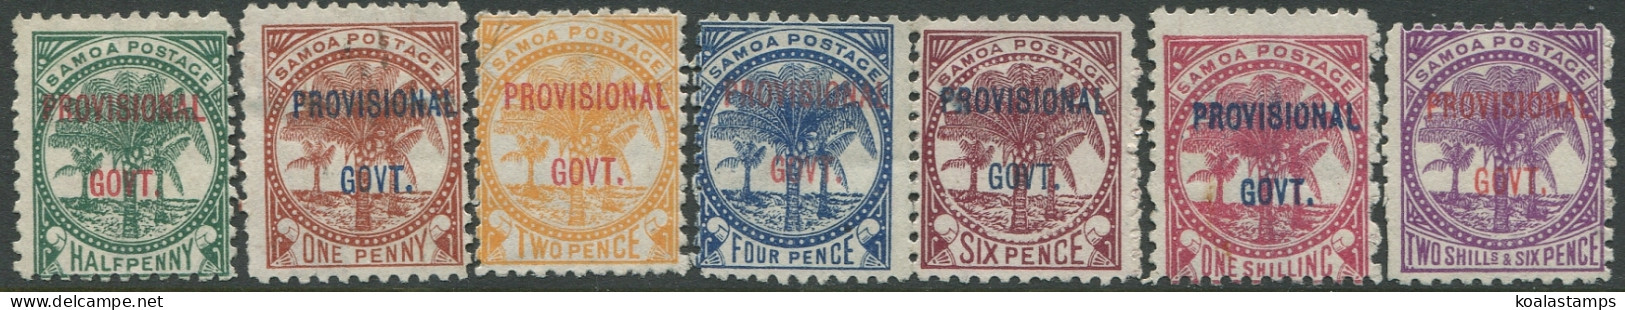 Samoa 1899 SG90-97 Palm Trees PROVISIONAL GOVT. Ovpt (7) MNG - Samoa